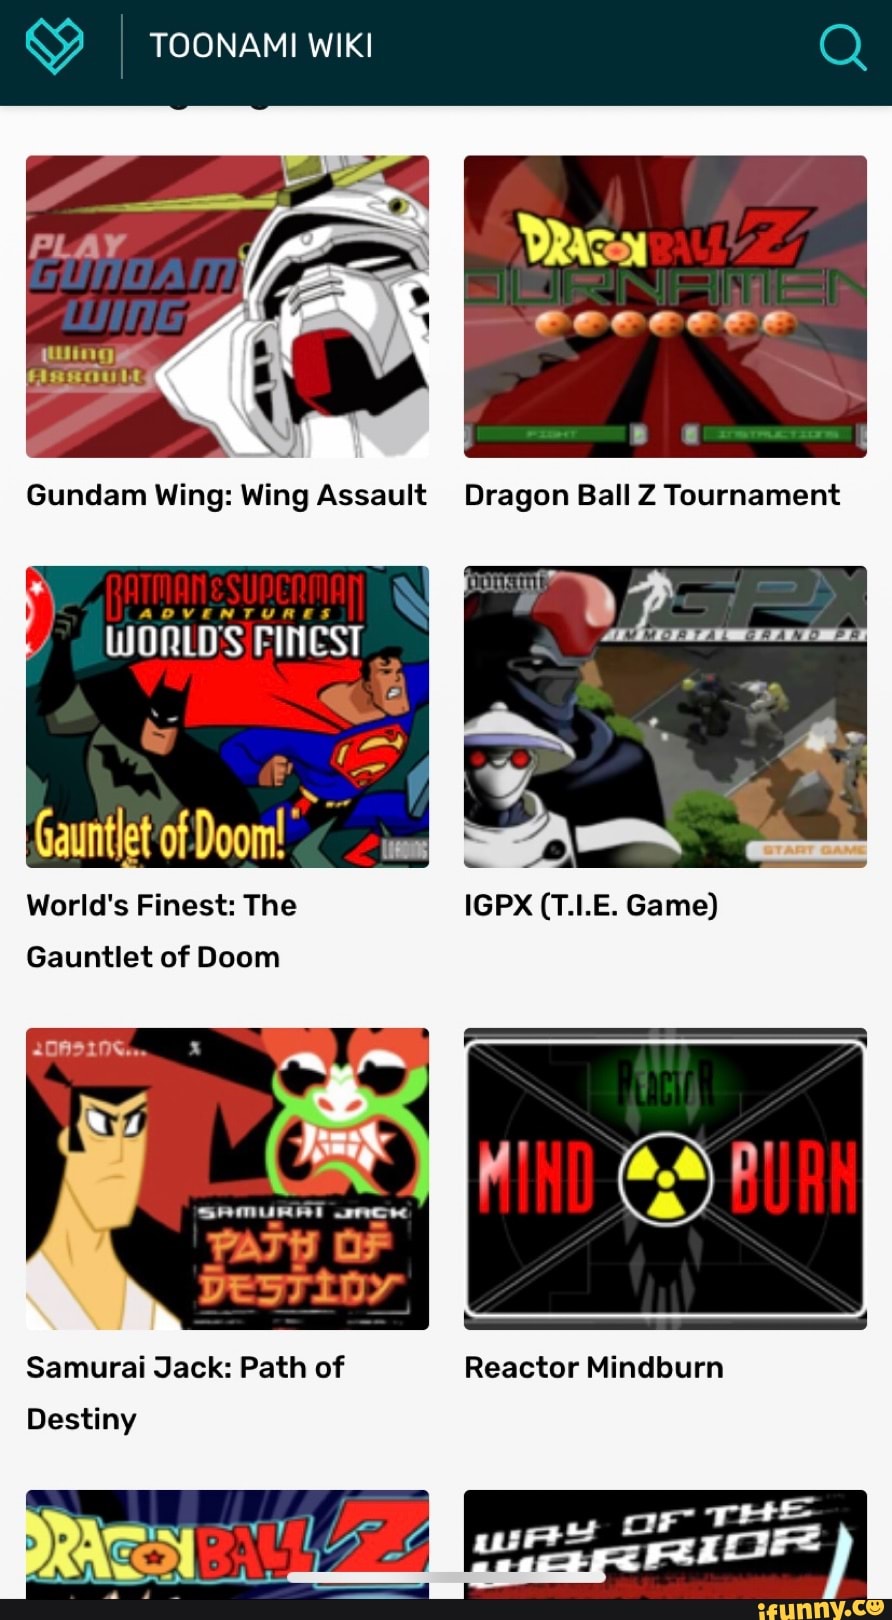 Dragon Ball Z Tournament, Toonami Wiki